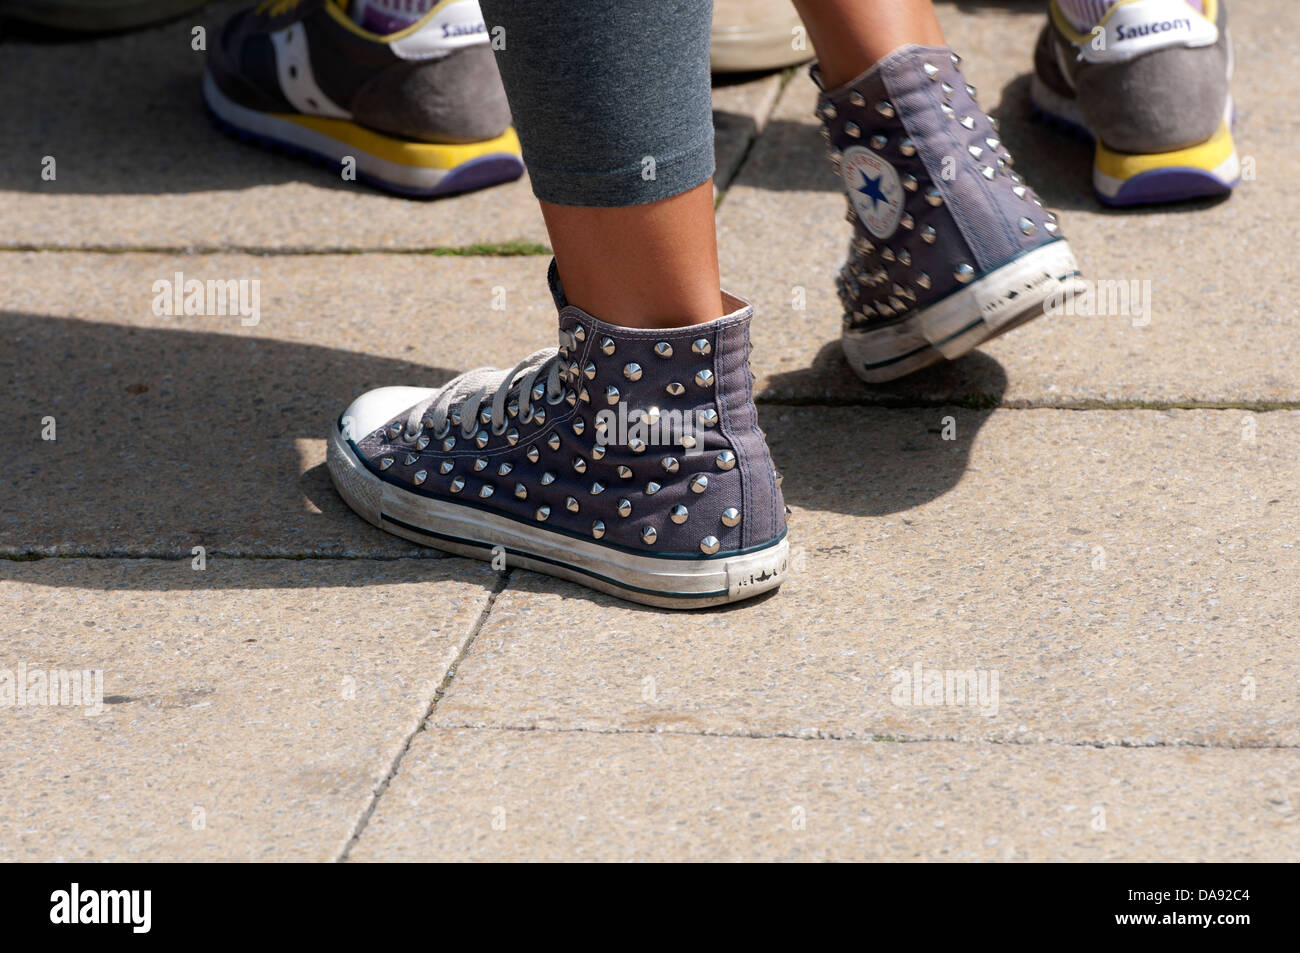 Girl wearing Converse baseball boots Stock Photo - Alamy